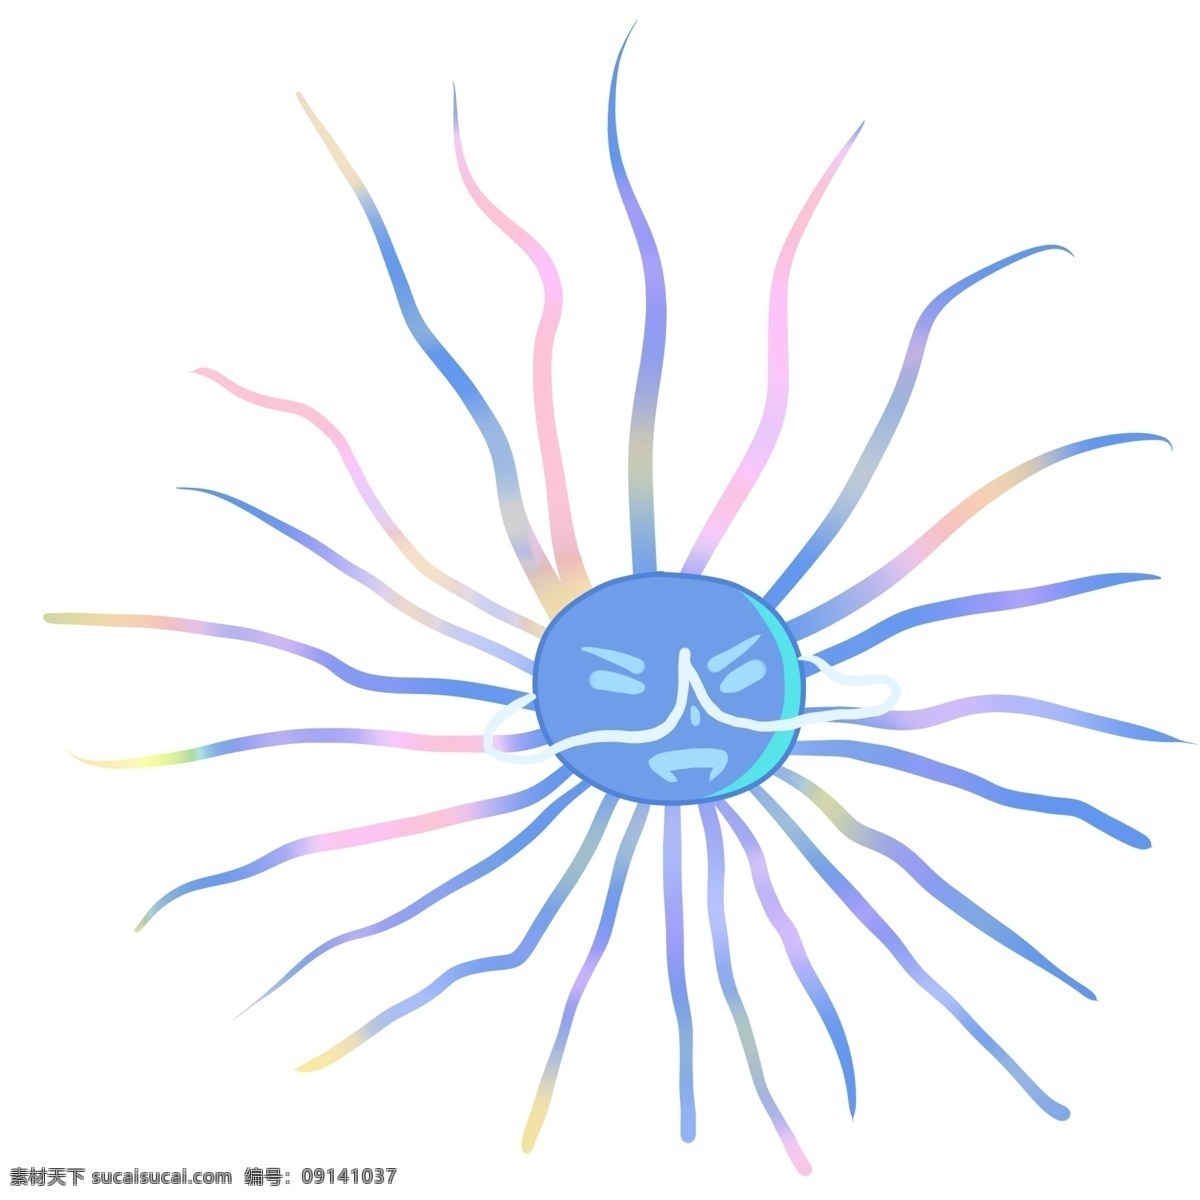 螺旋 菌 细菌 插画 螺旋菌插画 卡通插画 细菌插画 病菌插画 细胞膜 细胞质 真菌 单细胞生物